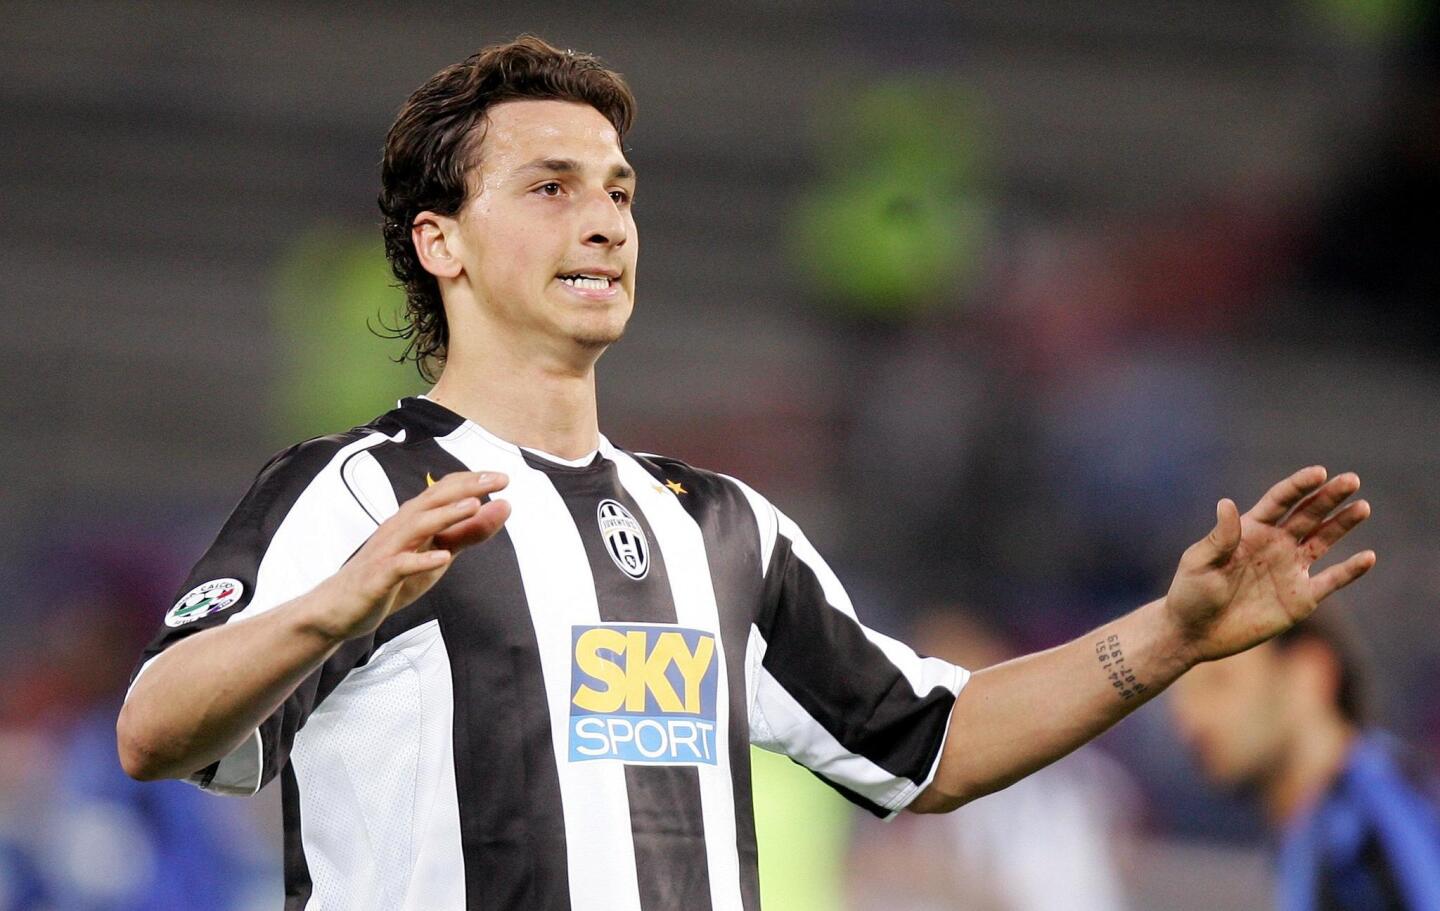 Ibrahimovic fue vendido a la Juventus en 2004. Anotó 23 goles y su estilo de juego llamó la atención a otros clubes importantes. Se perdió partidos claves con la Vecchia Signora, algo que no le gustó mucho a su seguidores y que le echaron en cara hasta su salida en 2006.